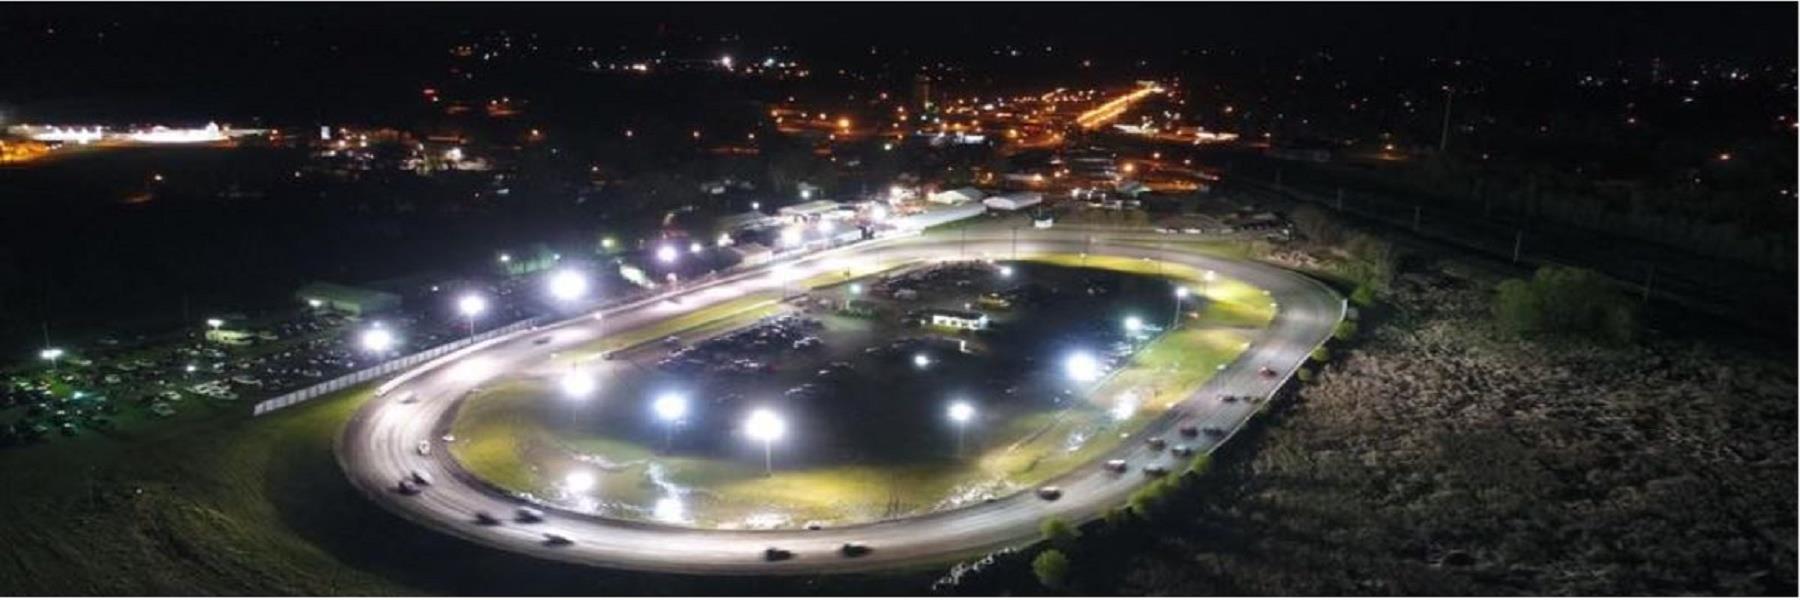 8/12/2022 - Fiesta City Speedway